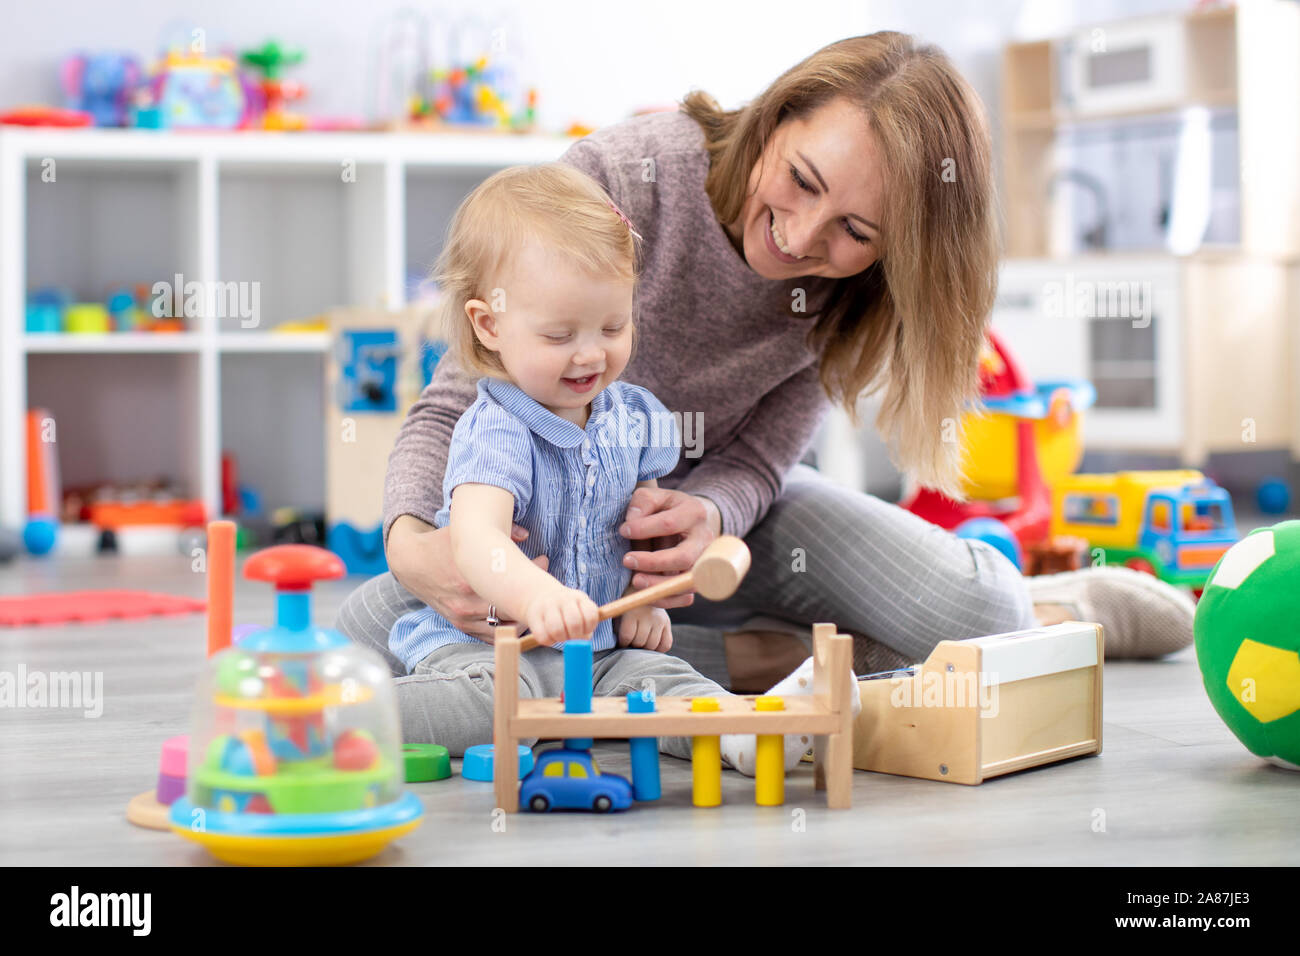 Allegro baby giocare con giocattoli con felice madre nella nursery room Foto Stock